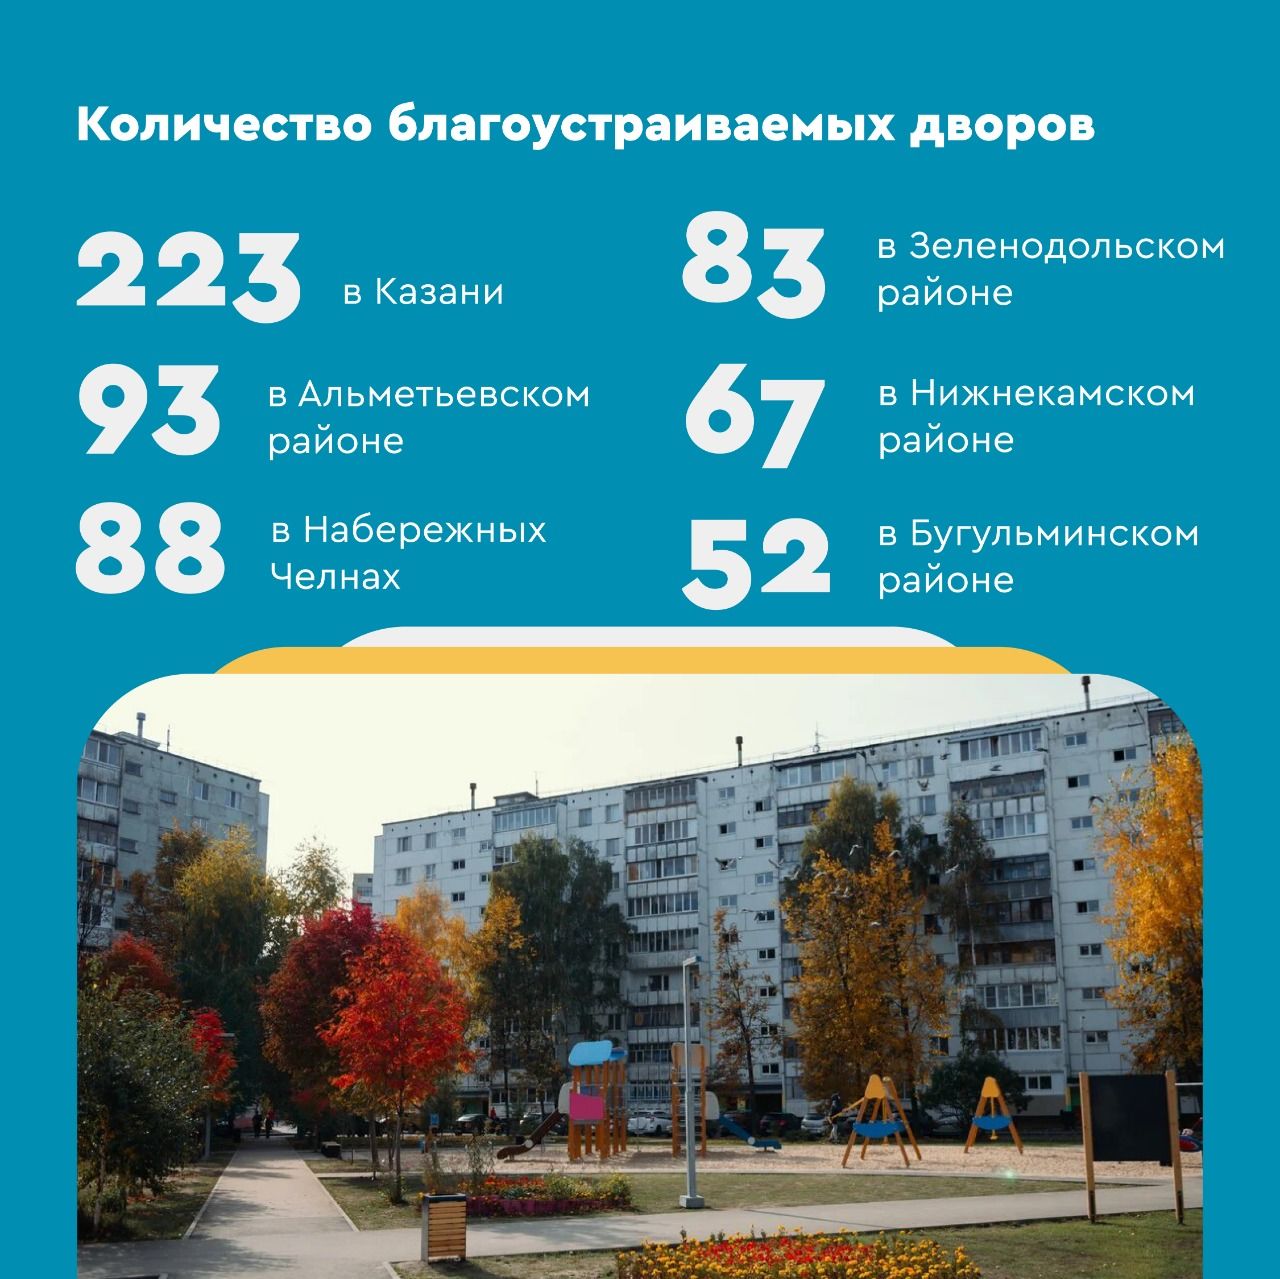 В 2021 году в Татарстане благоустроят 1074 двора